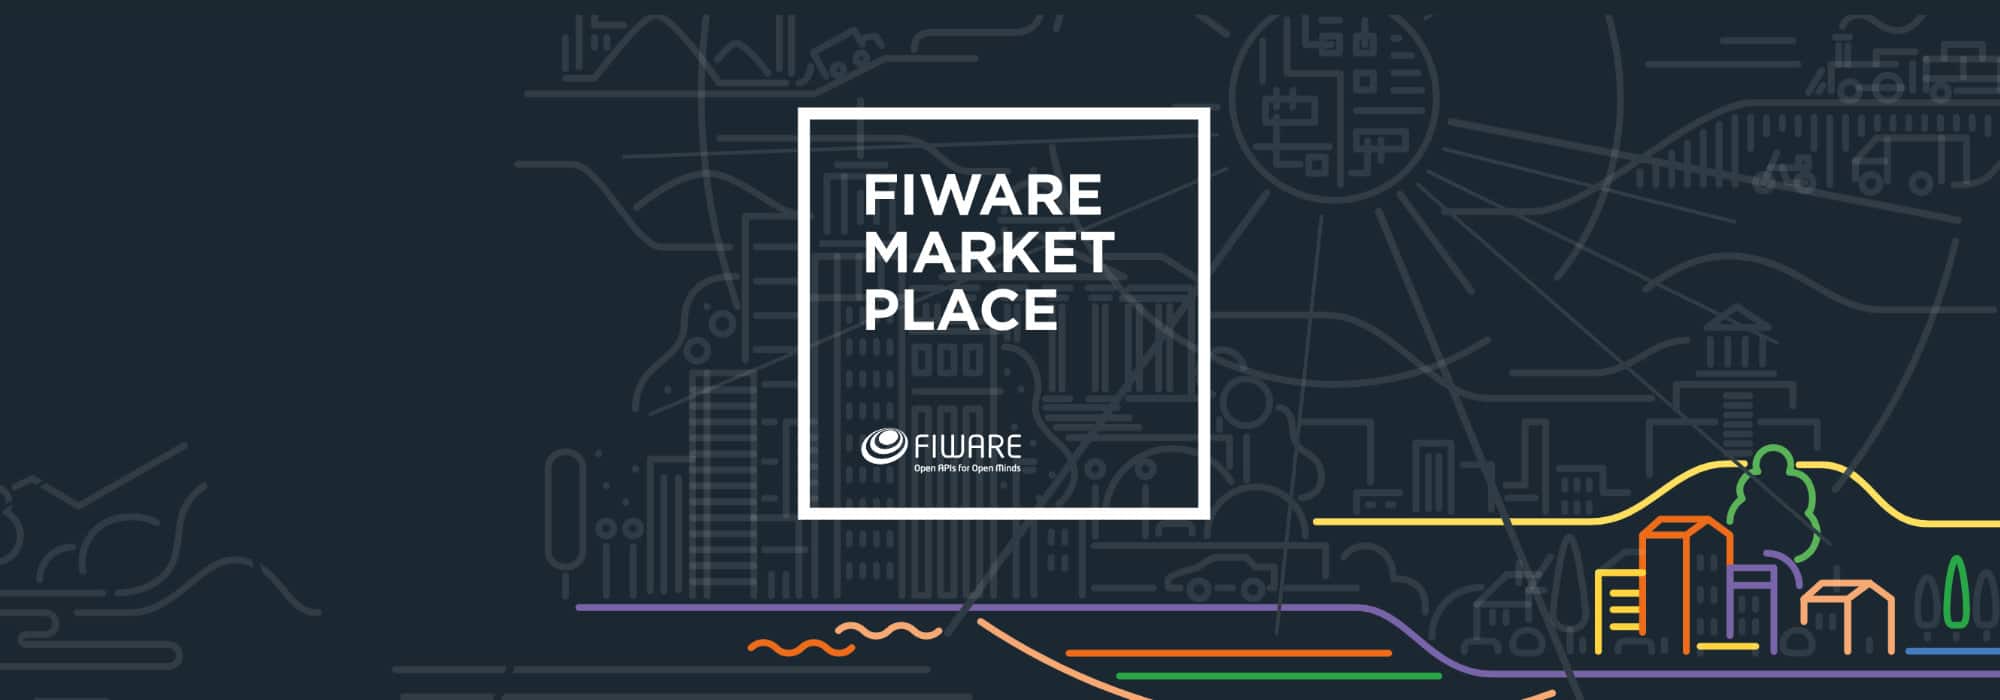 fiware marketplace